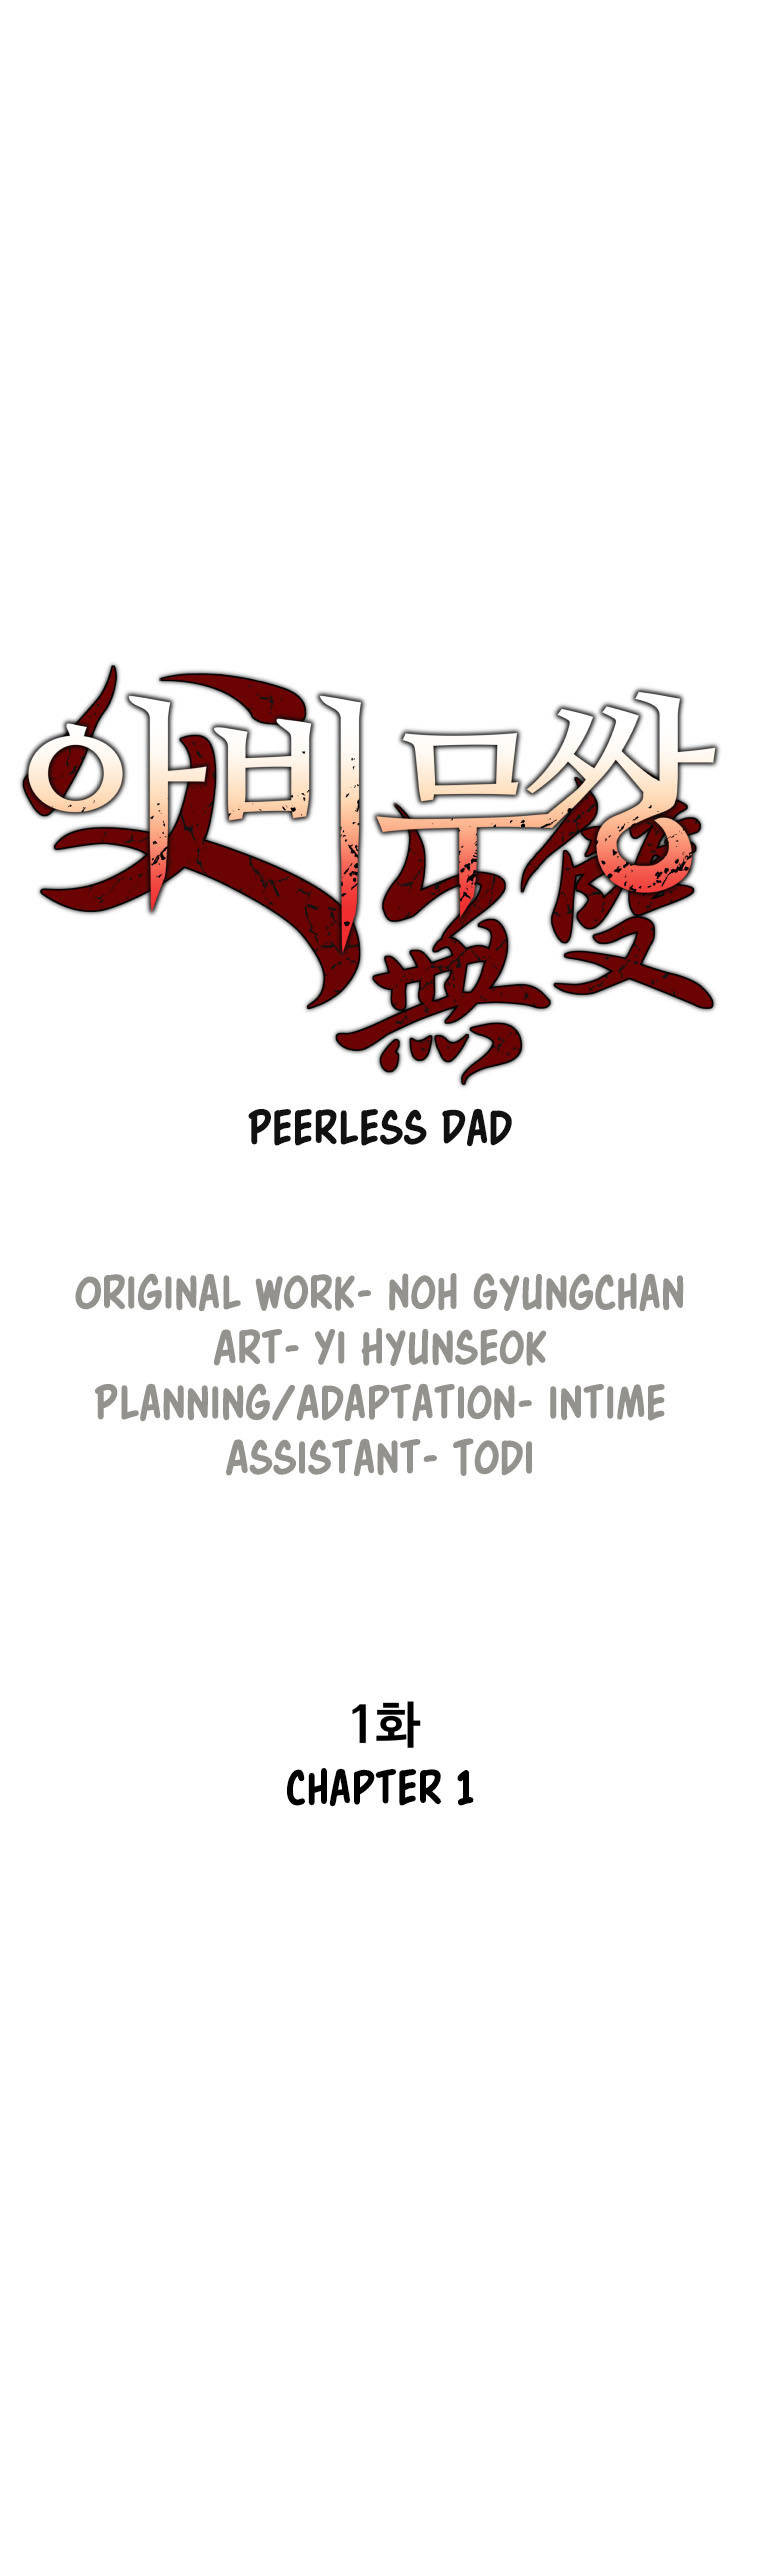 Peerless Dad - ch 001 Zeurel